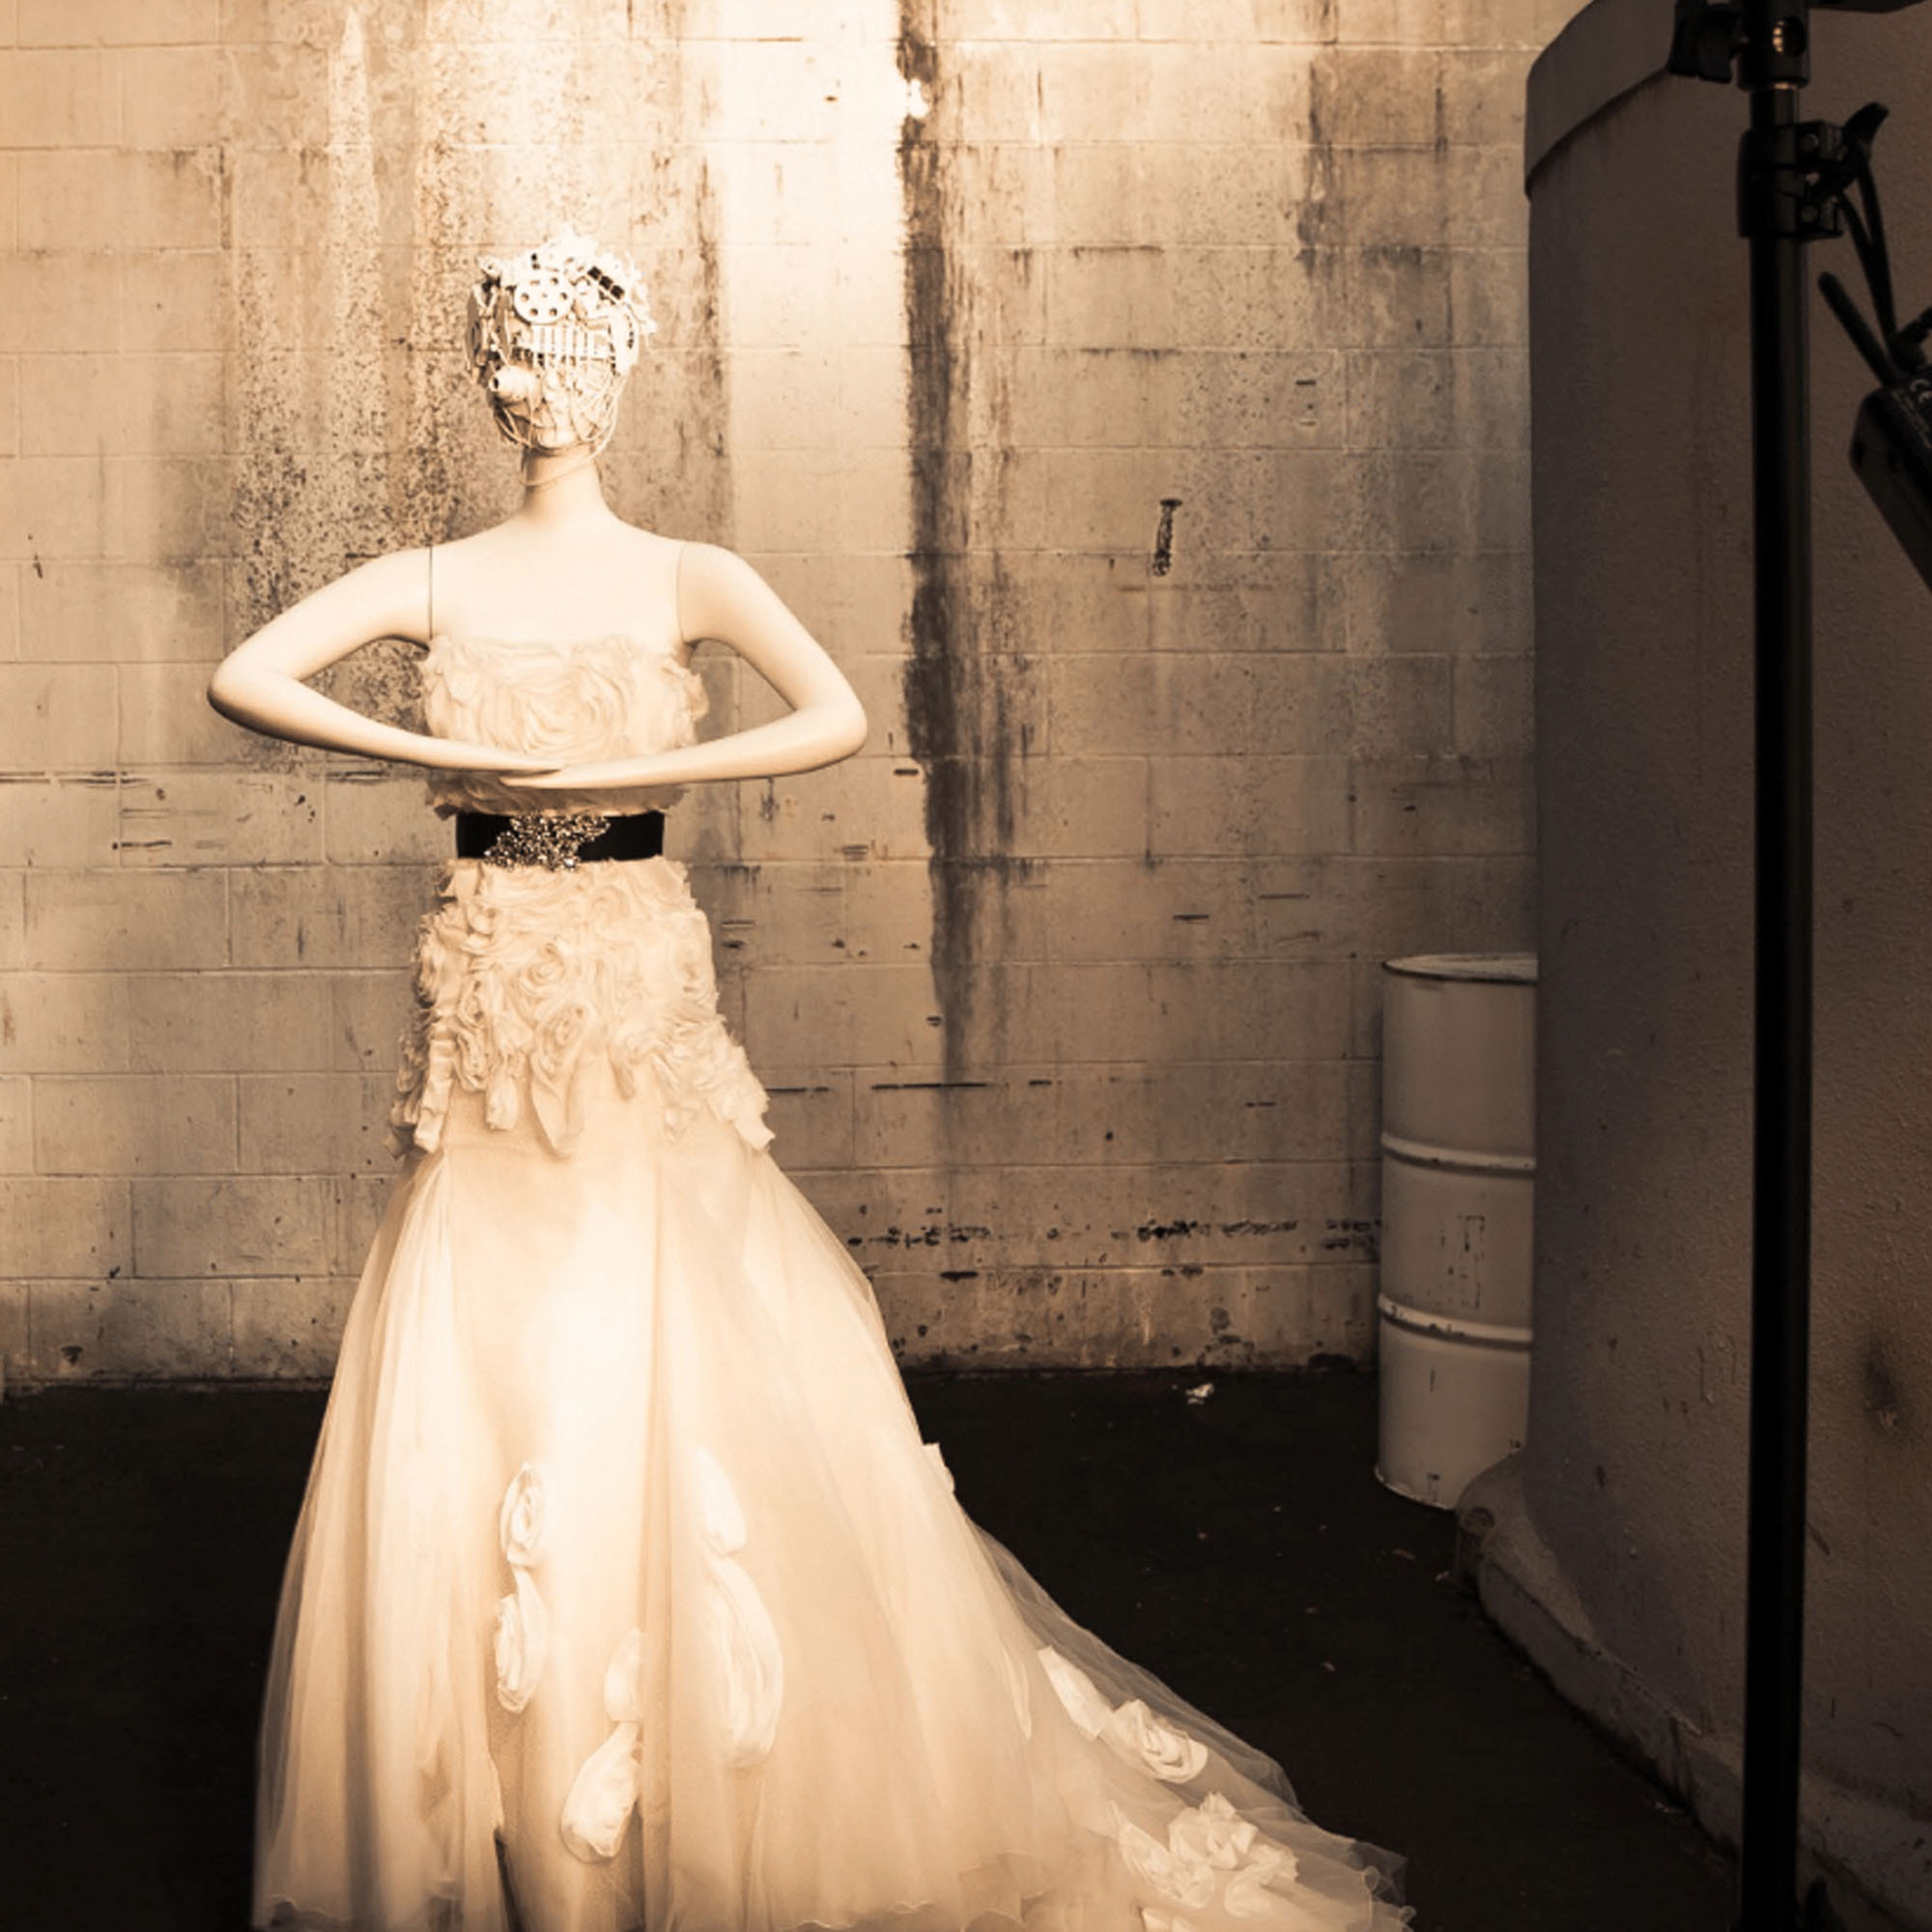 Bride & Groom Mannequin Photoshoot 